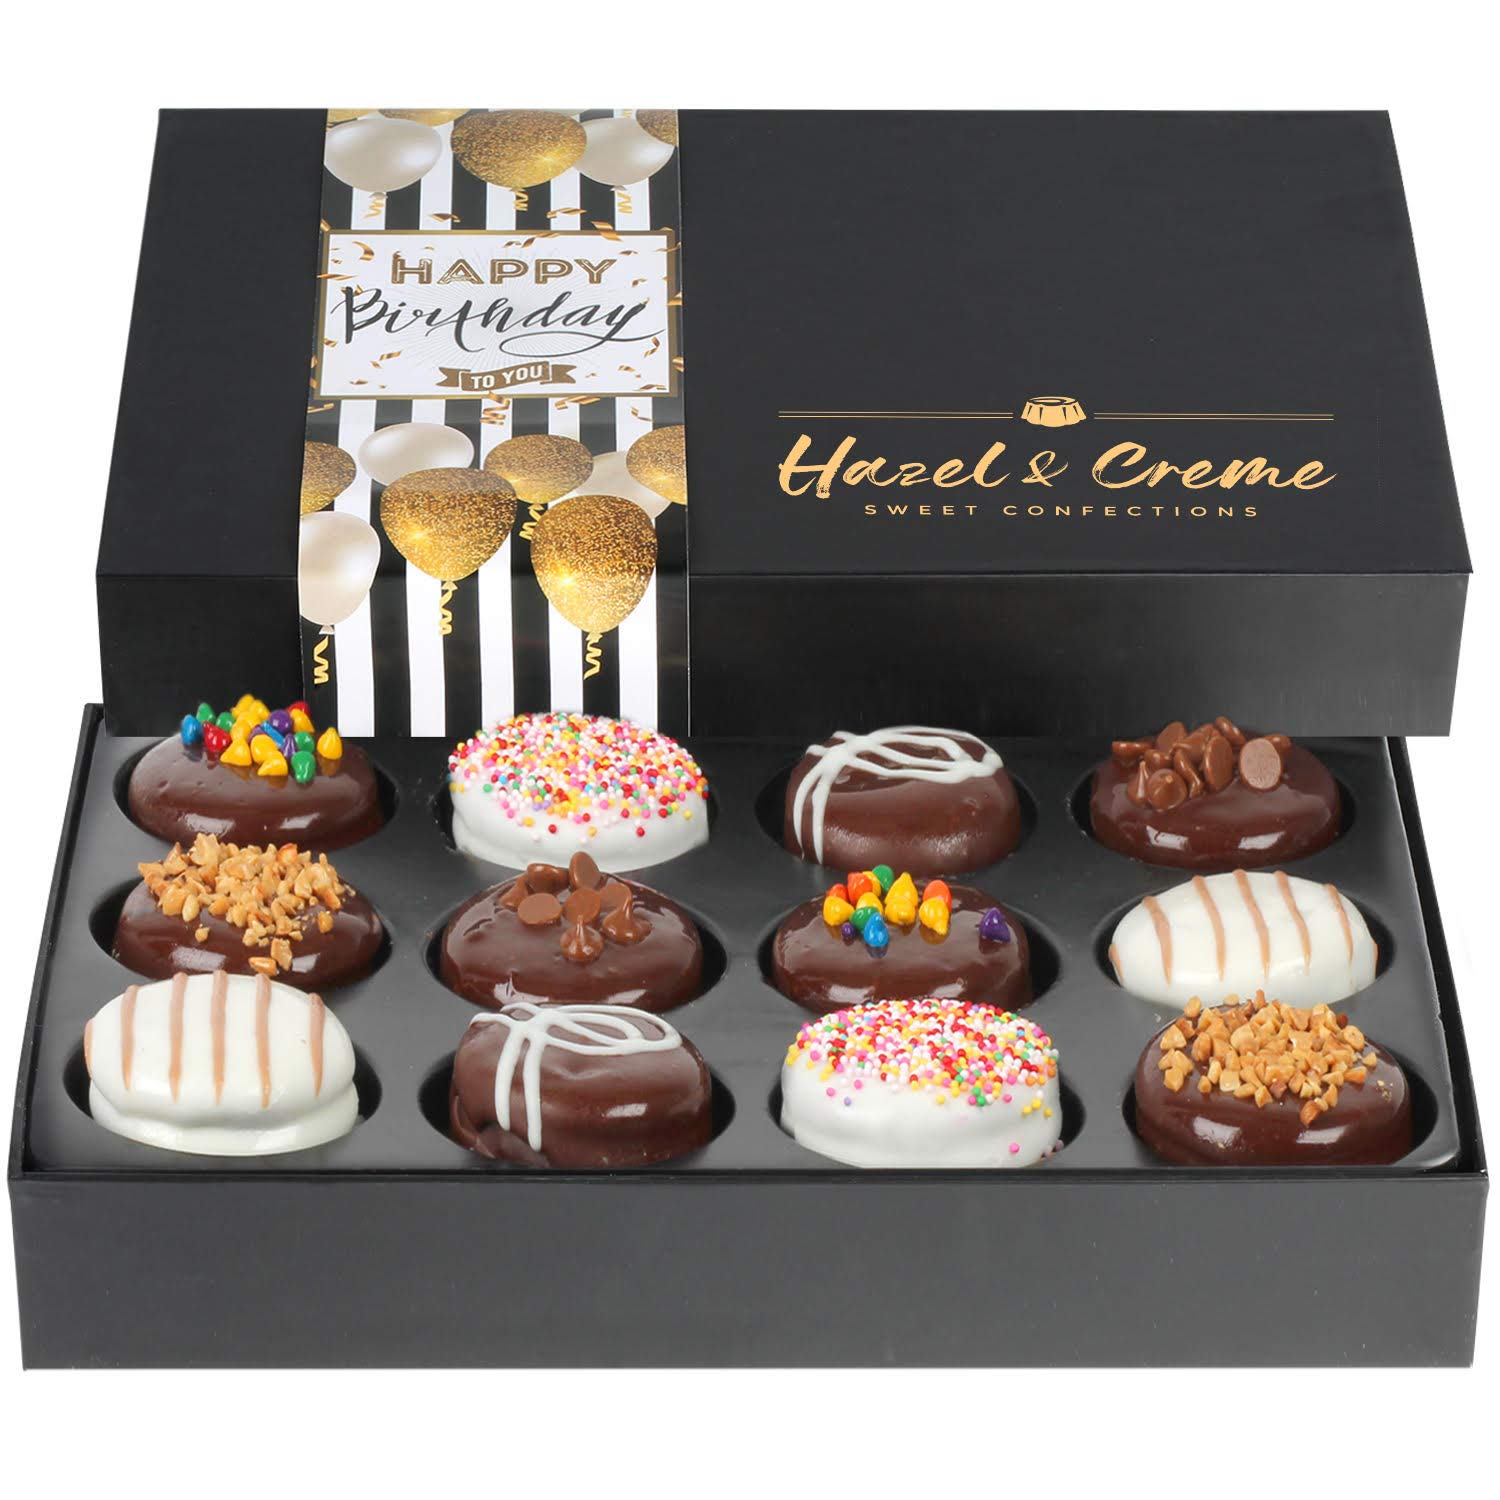 Happy Birthday gourmet chocolate gift box - RICHART Chocolate